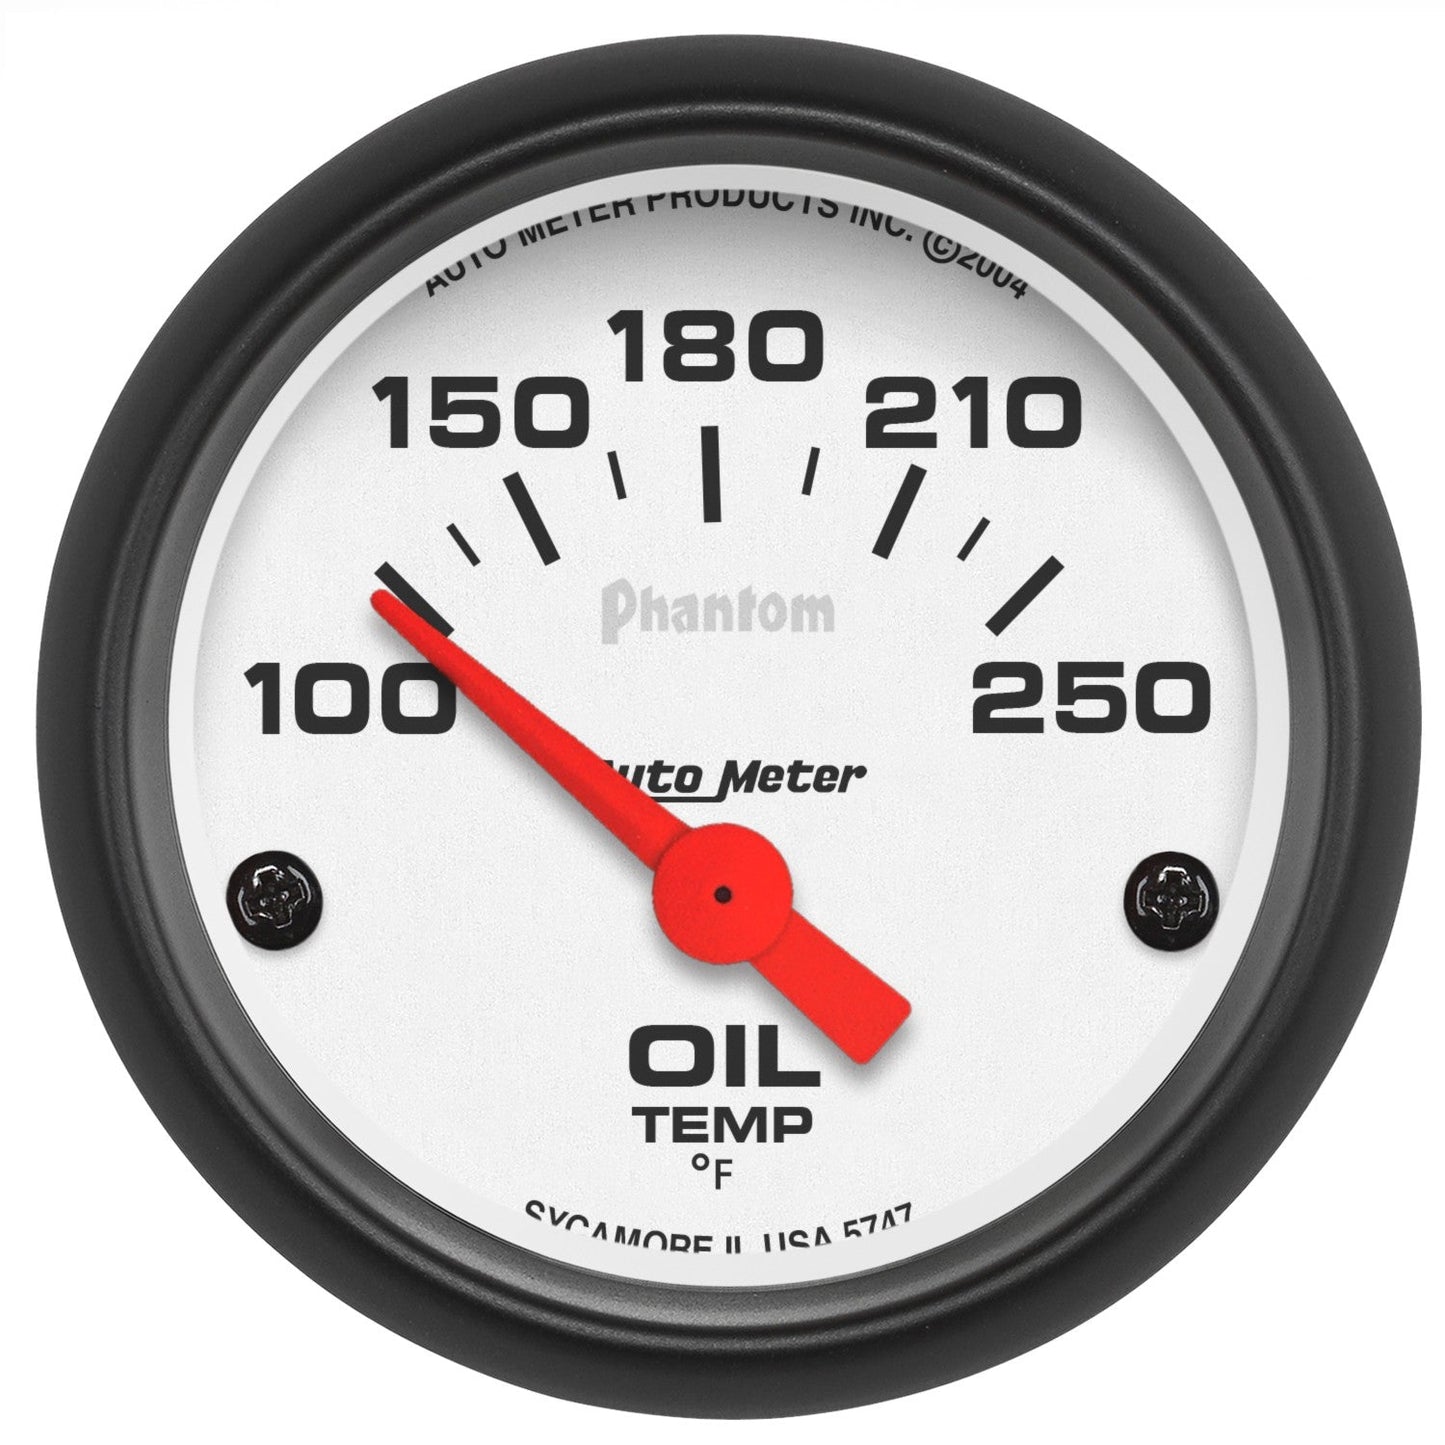 AutoMeter - 2-1/16" OIL TEMPERATURE, 100-250 °F, AIR-CORE, PHANTOM (5747)